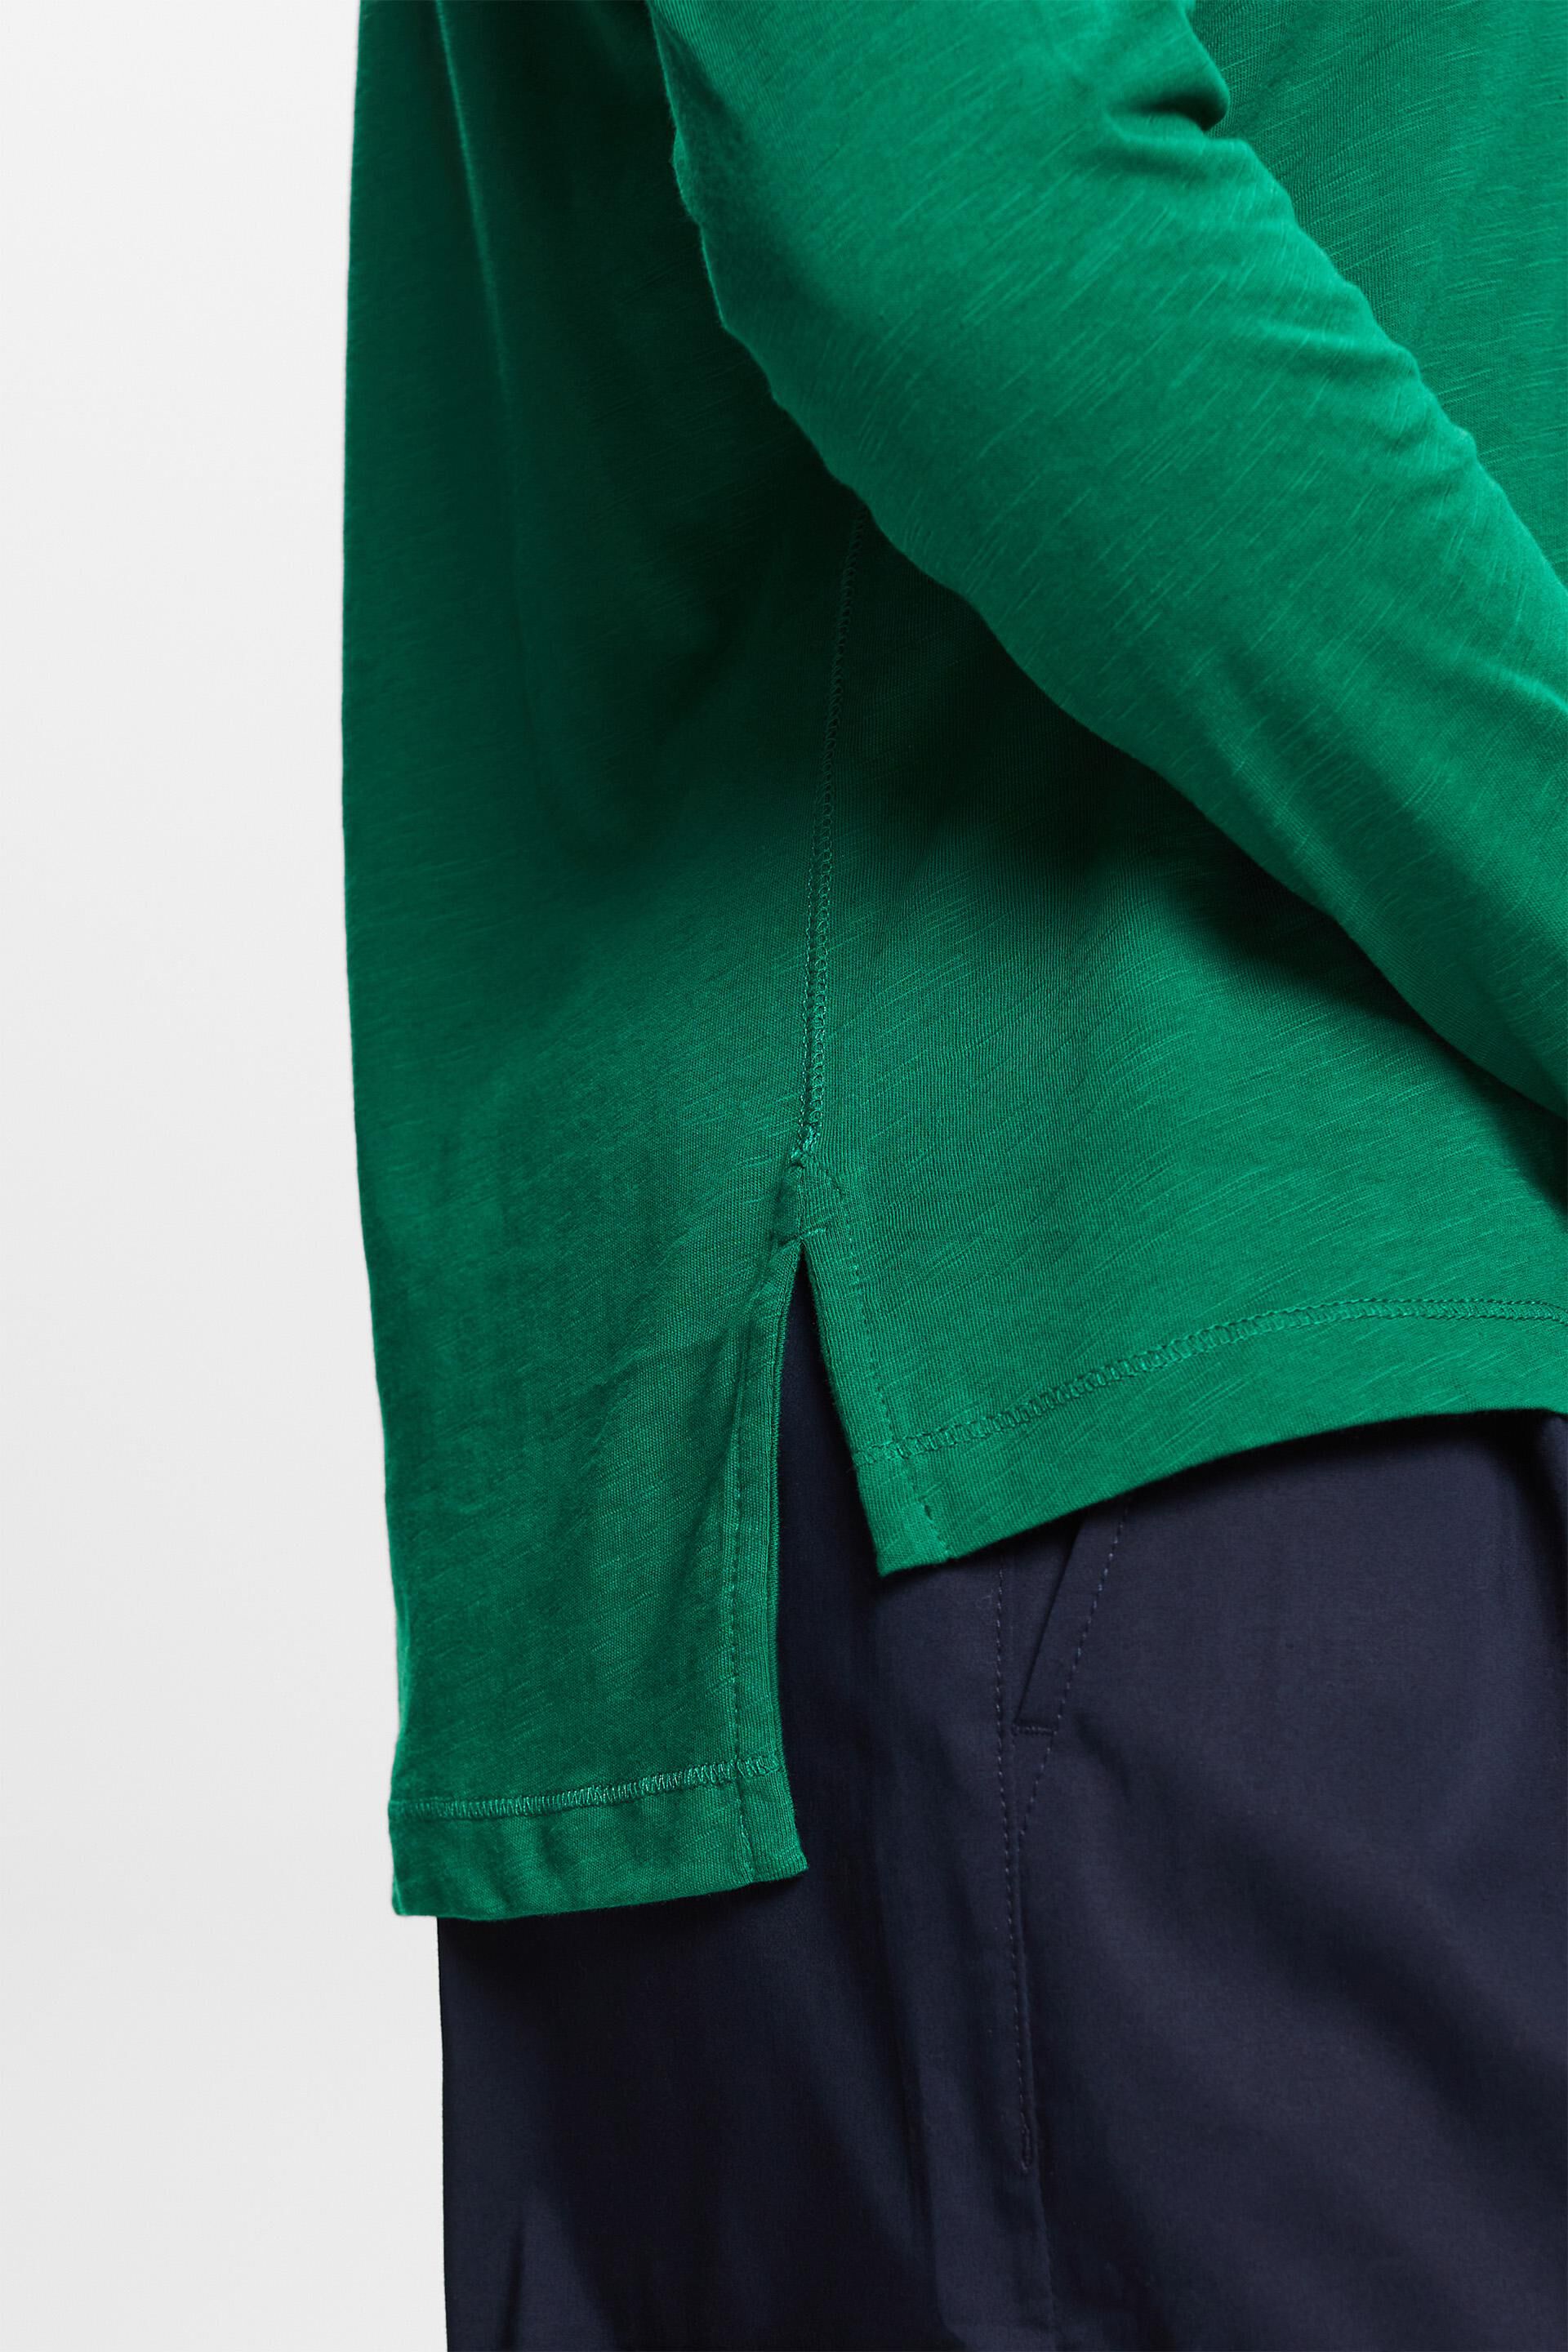 Esprit Jersey-Langarmshirt, % 100 Baumwolle